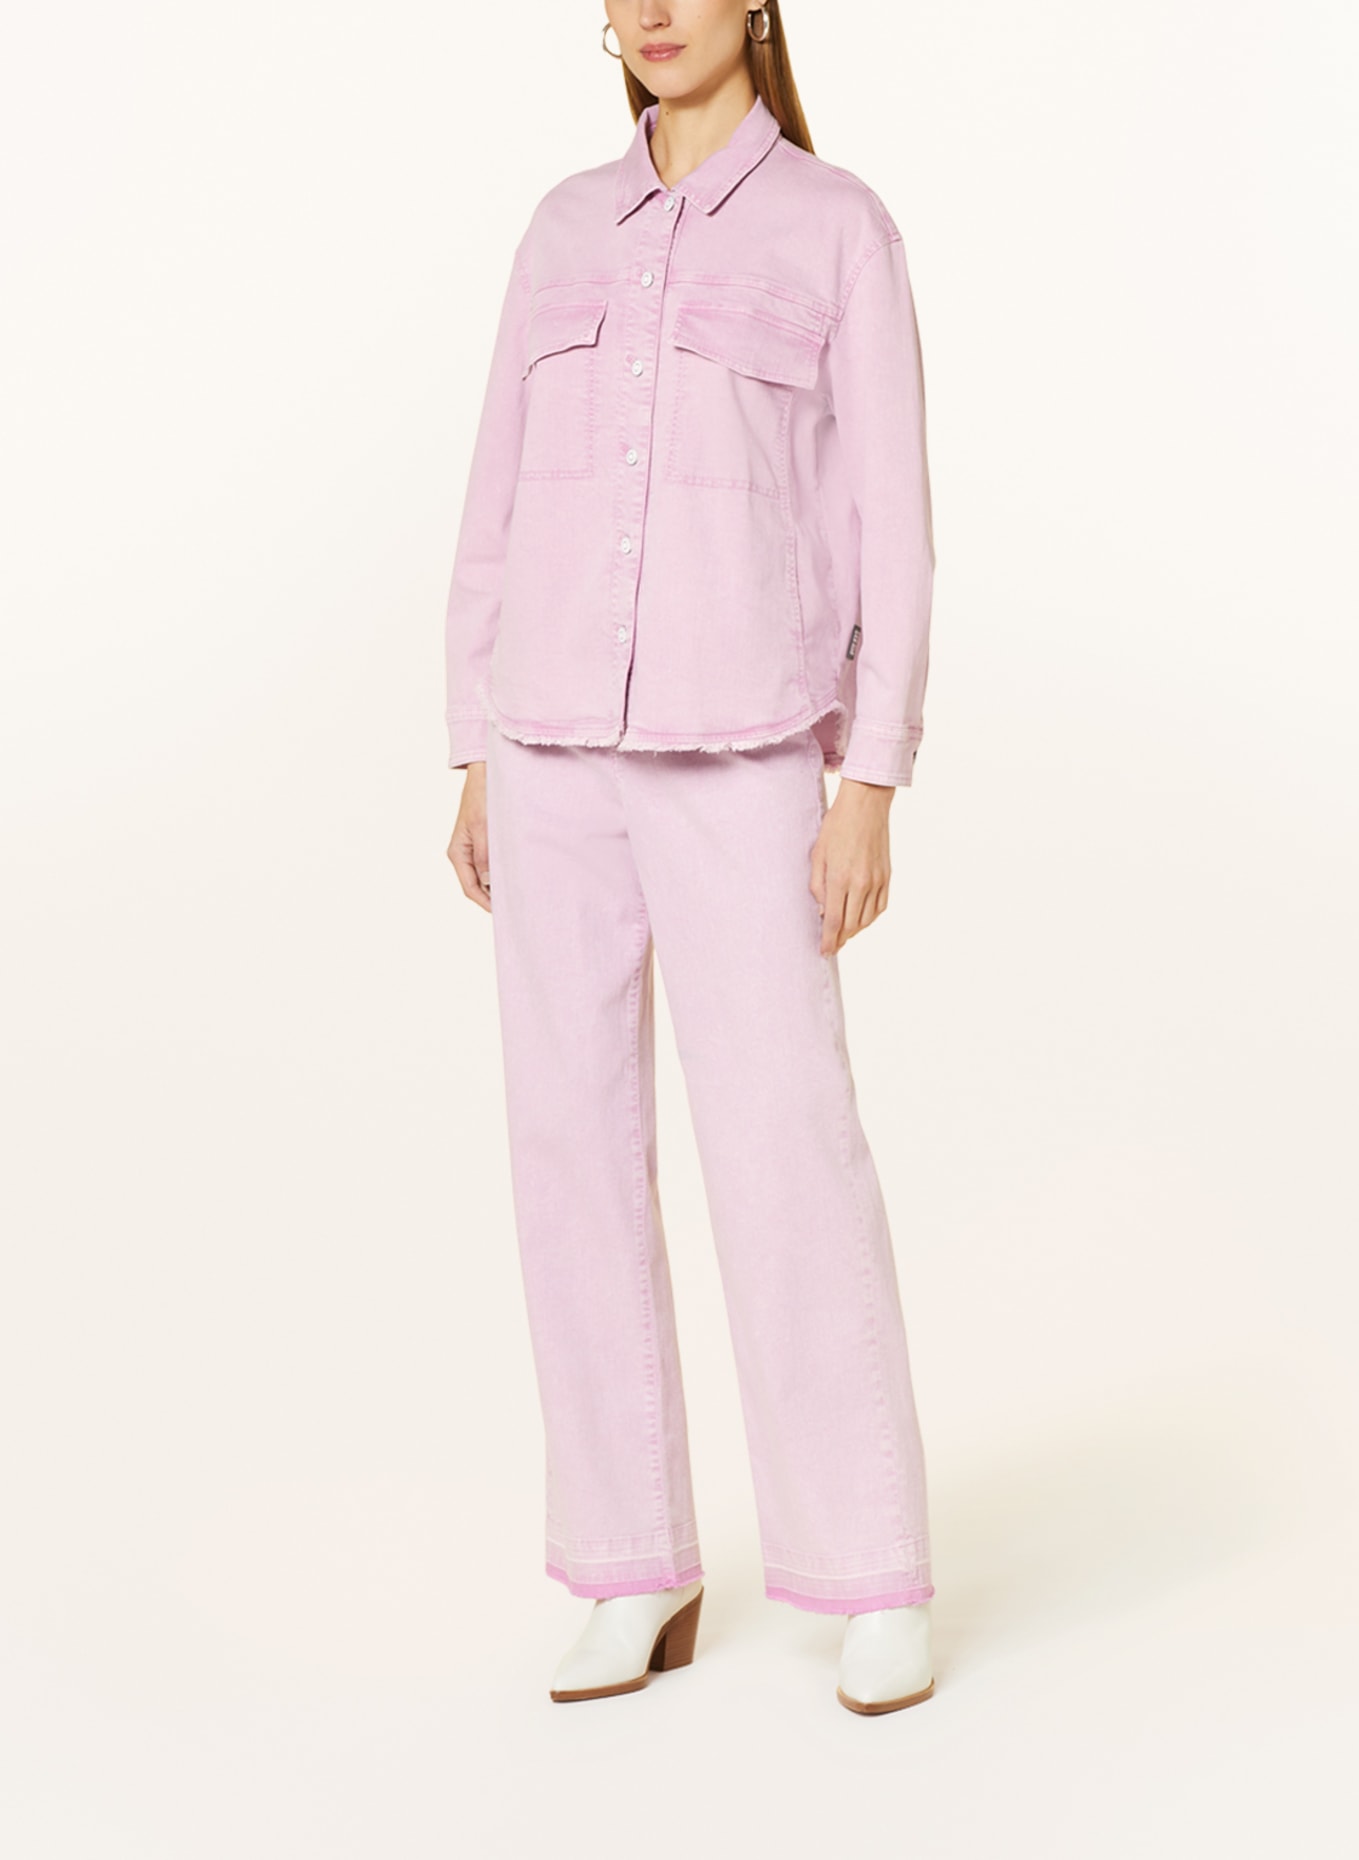 MARC CAIN Jeansbluse, Farbe: 708 bright pink lavender (Bild 2)